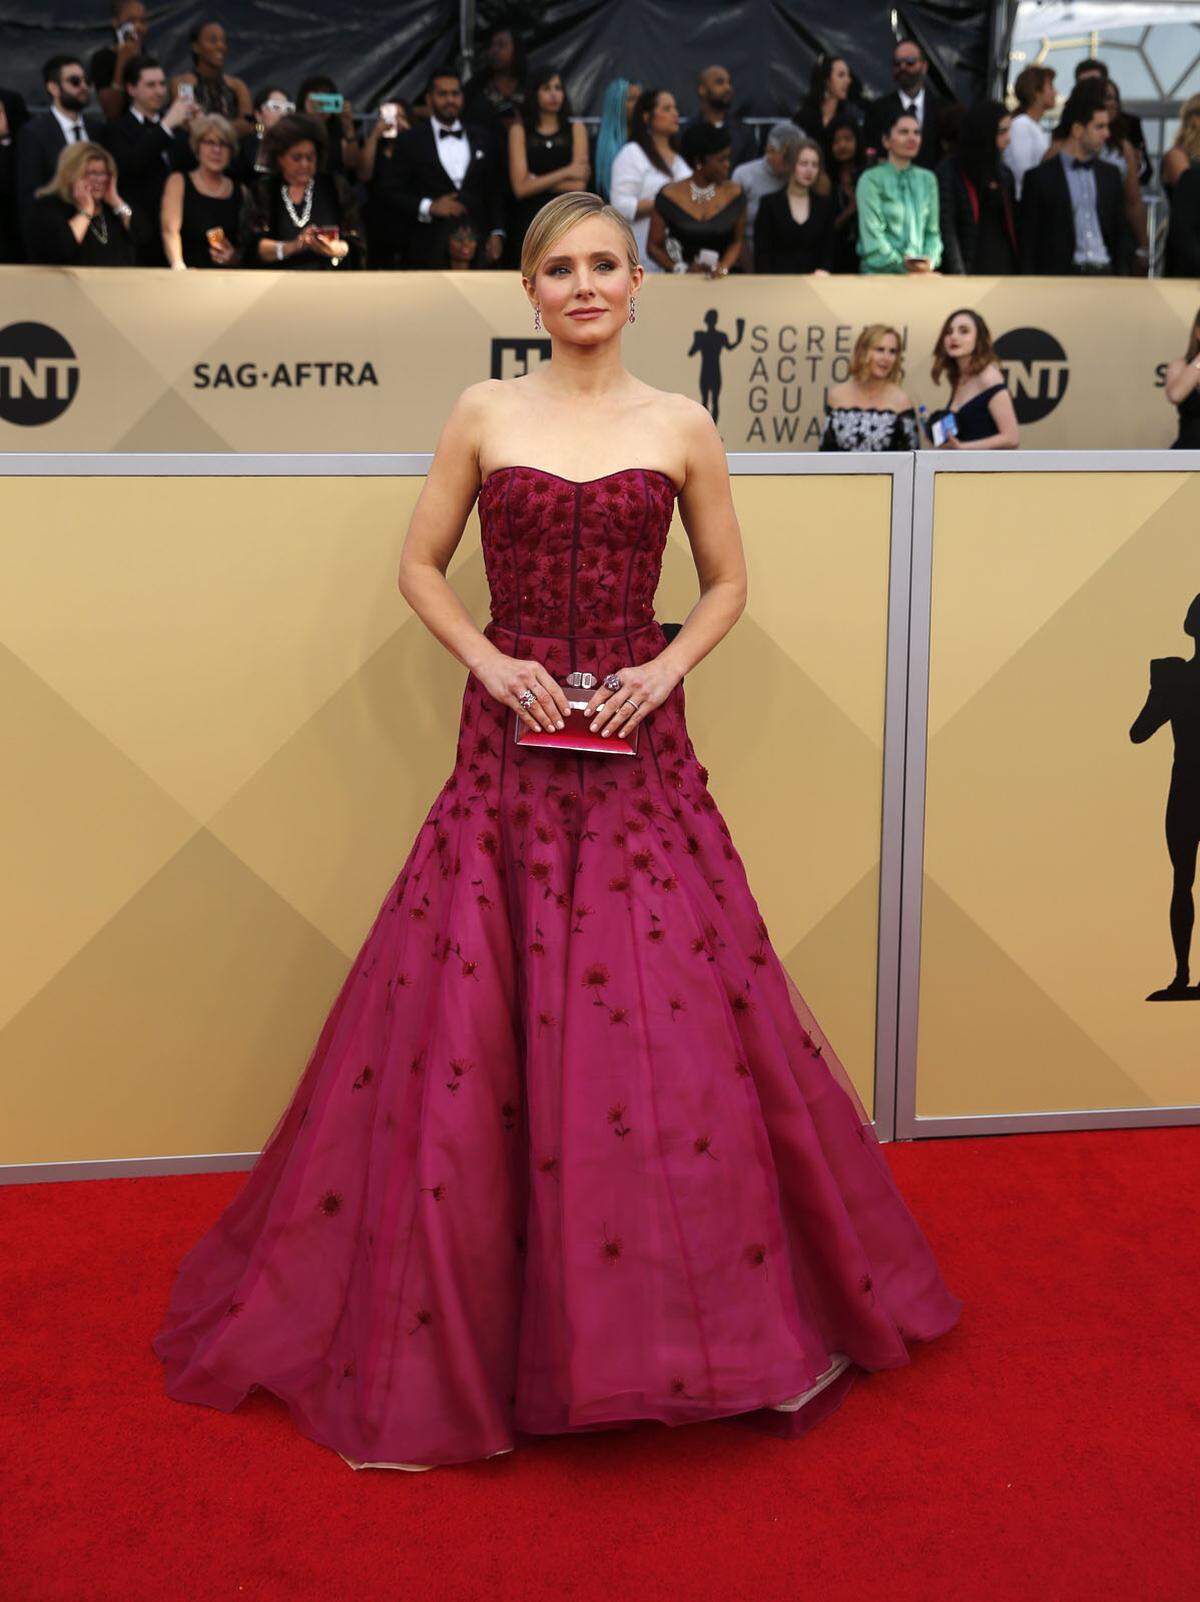 Hochelegant: Kristen Bell hätte in diesem Kleid von J. Mendel auch bei den Oscars erscheinen können.